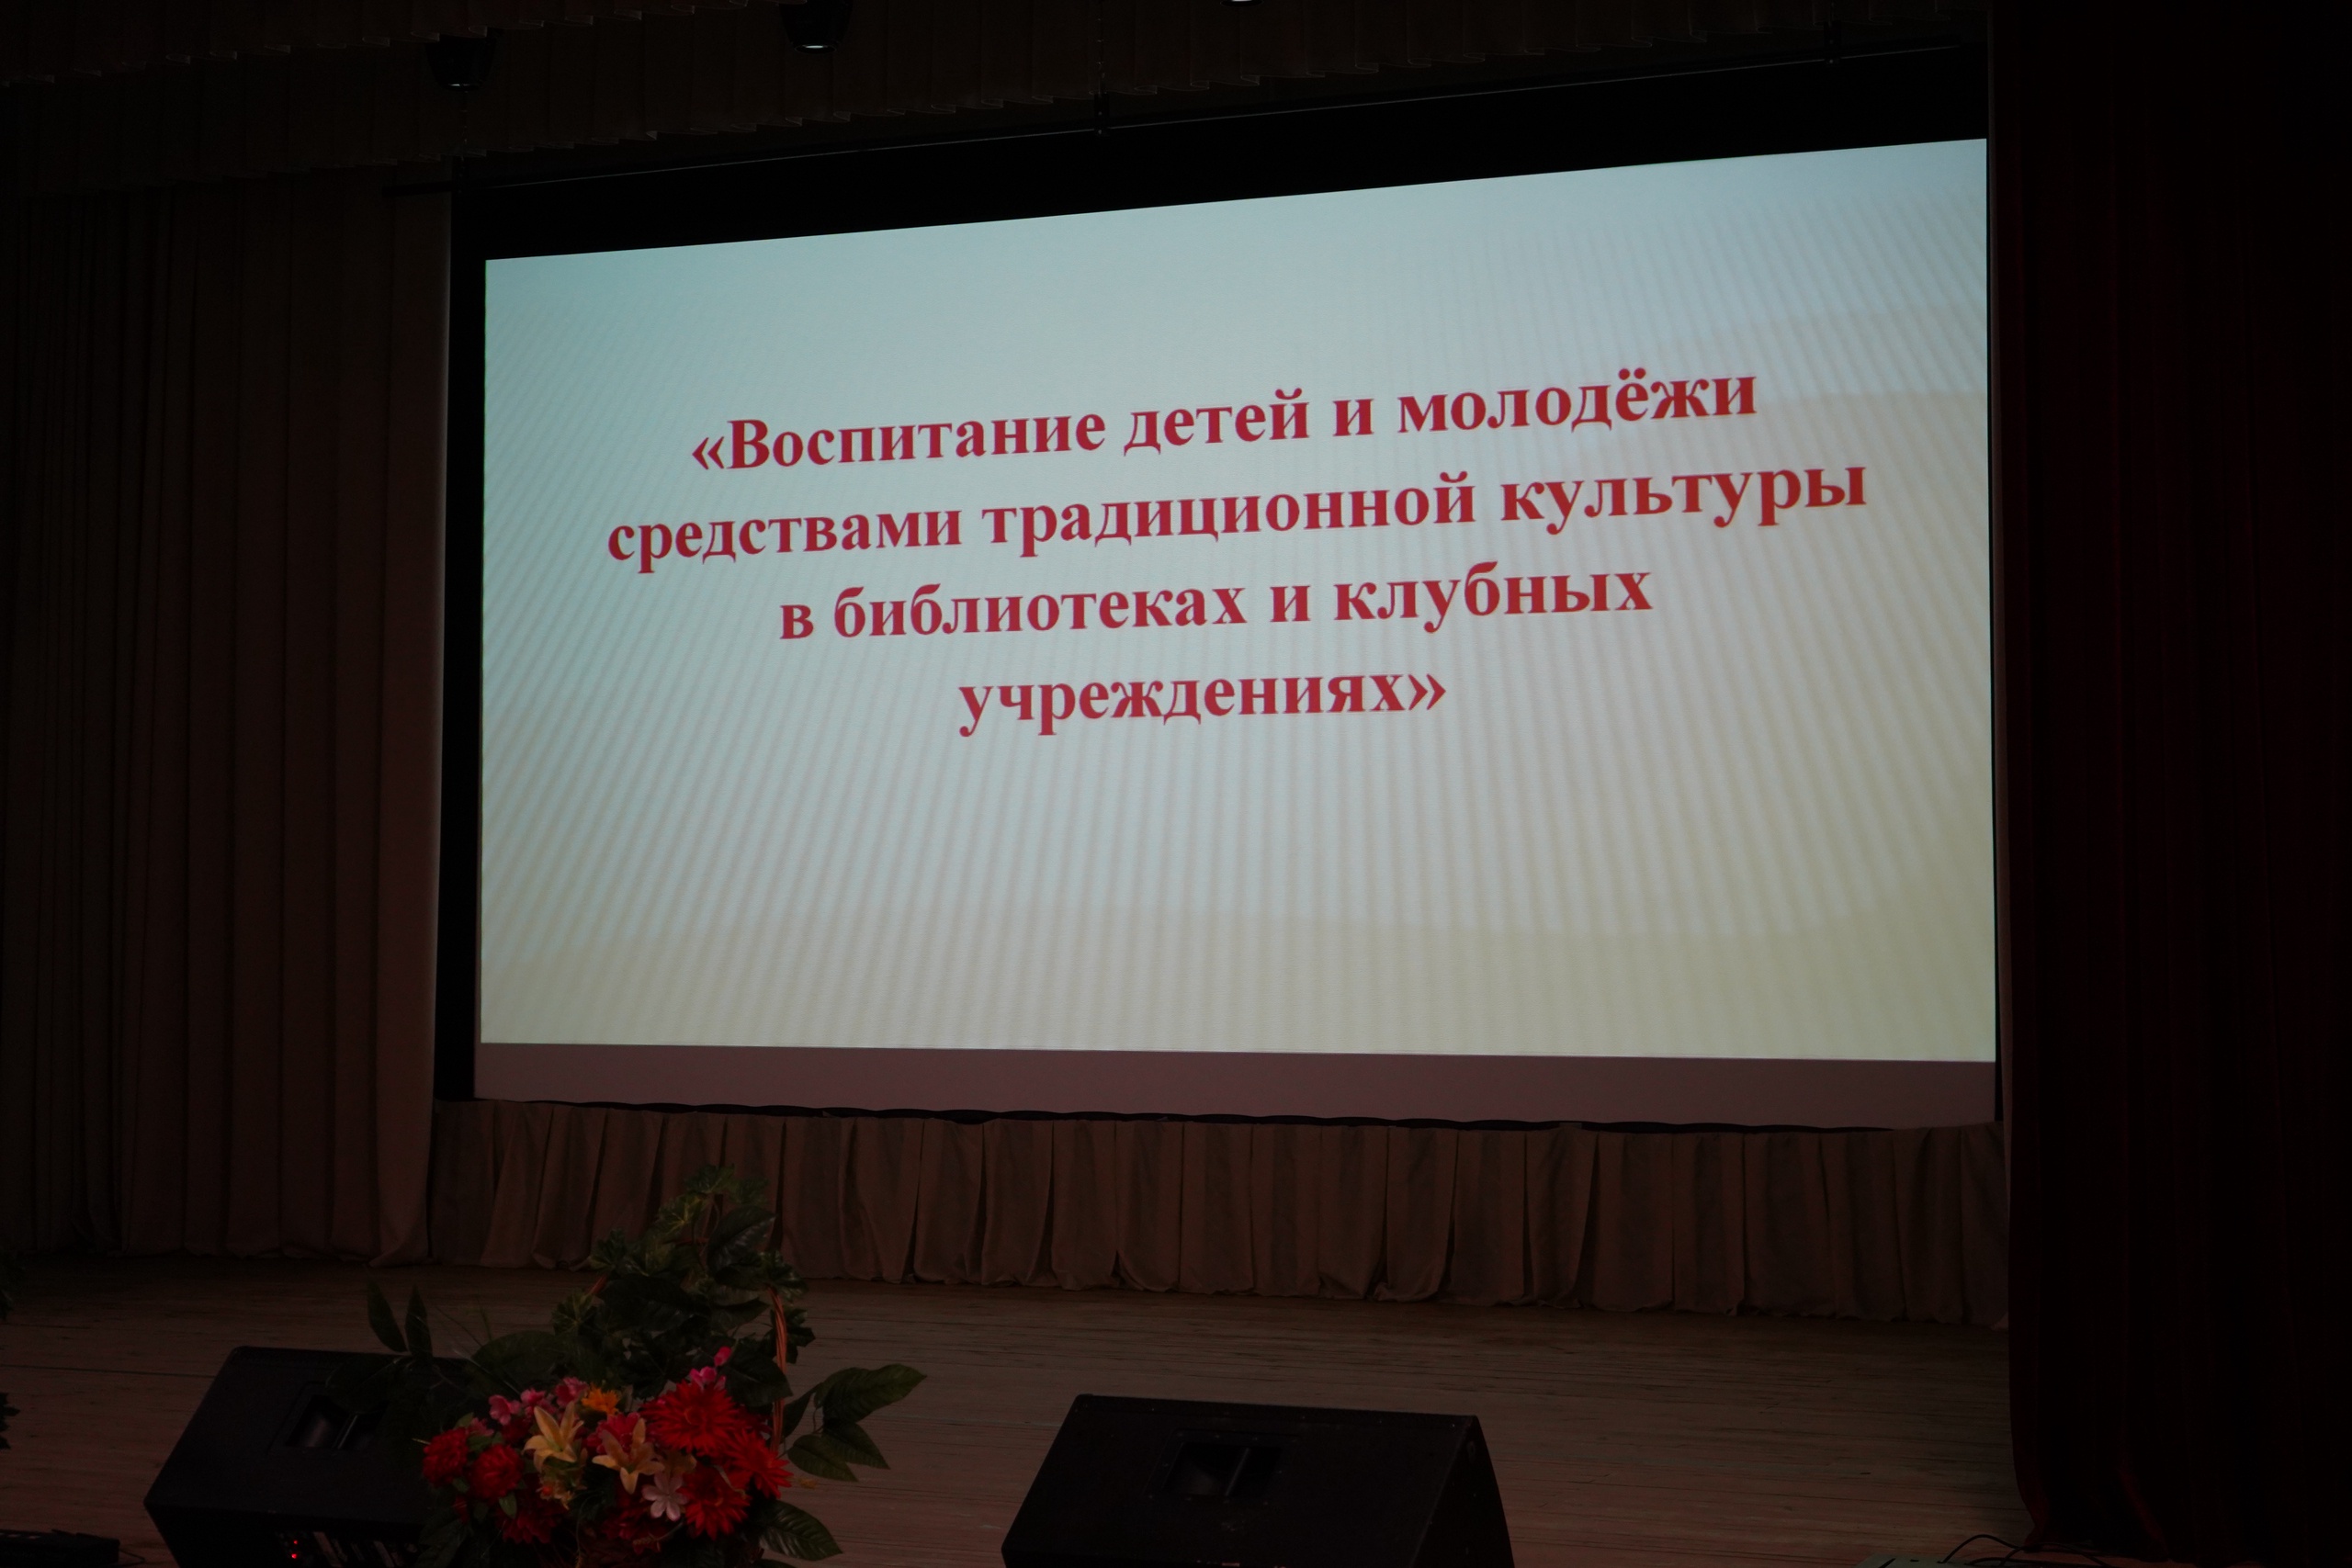 В Кличеве прошёл семинар для специалистов библиотек и клубных учреждений района